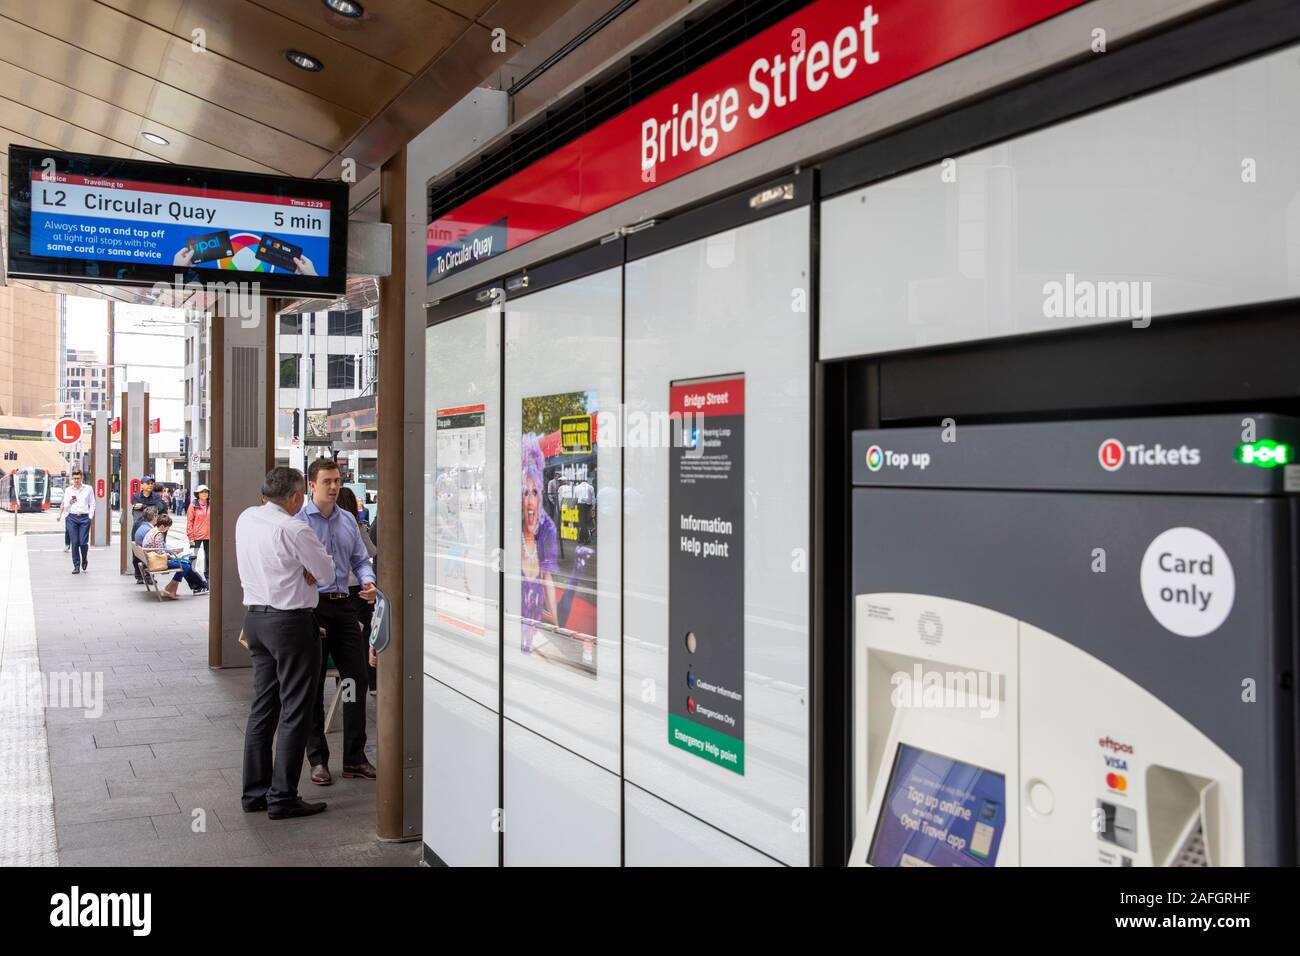 Station de métro léger appelée Bridge Street sur la route de train léger de sydney entre le quai circulaire et randwick, et la machine à billets, Sydney, Australie Banque D'Images